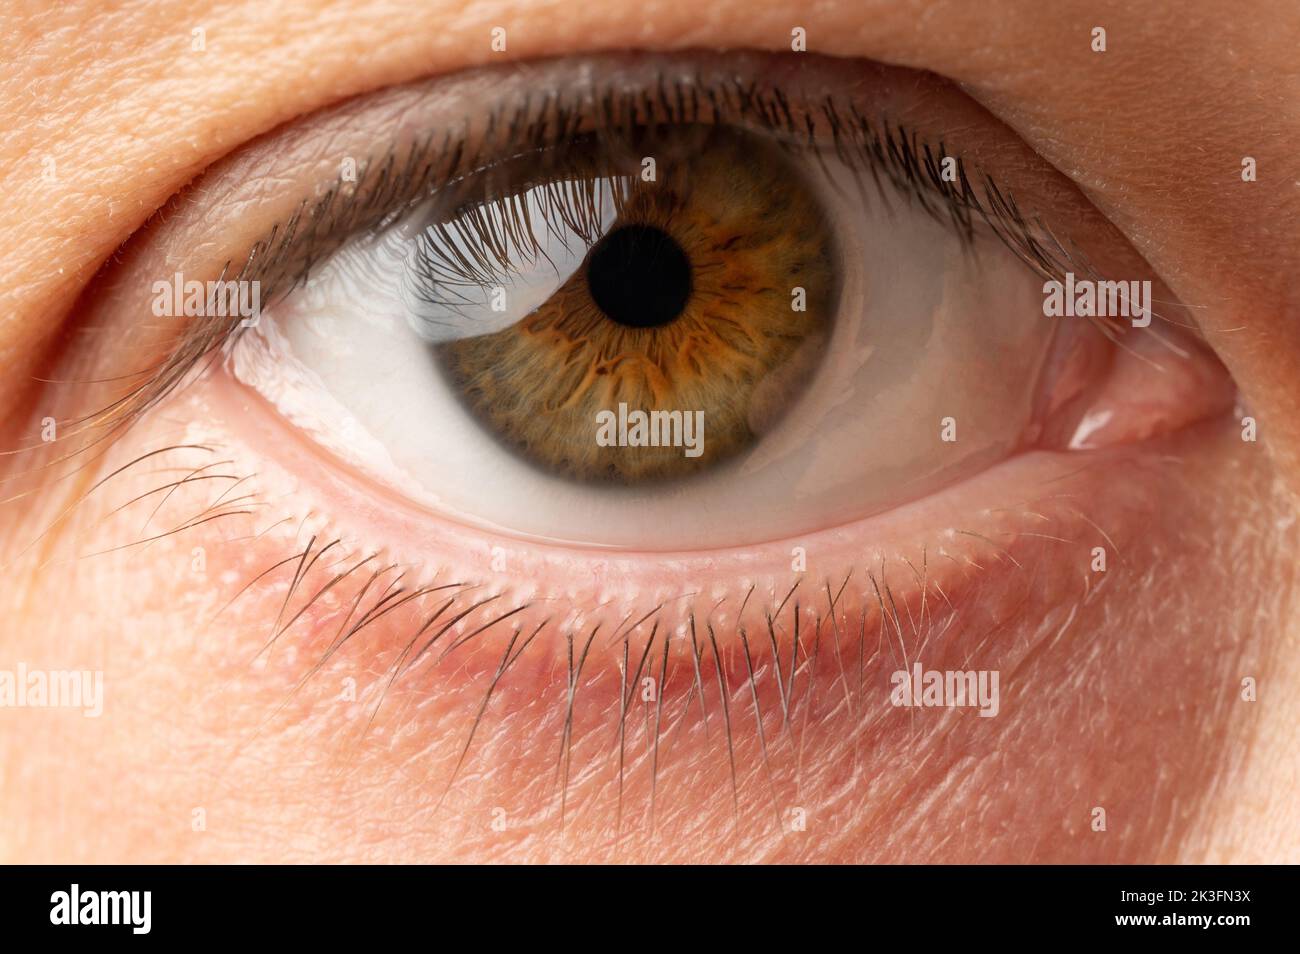 Vista de primer plano macro de ojo humano abierto y limpio Foto de stock